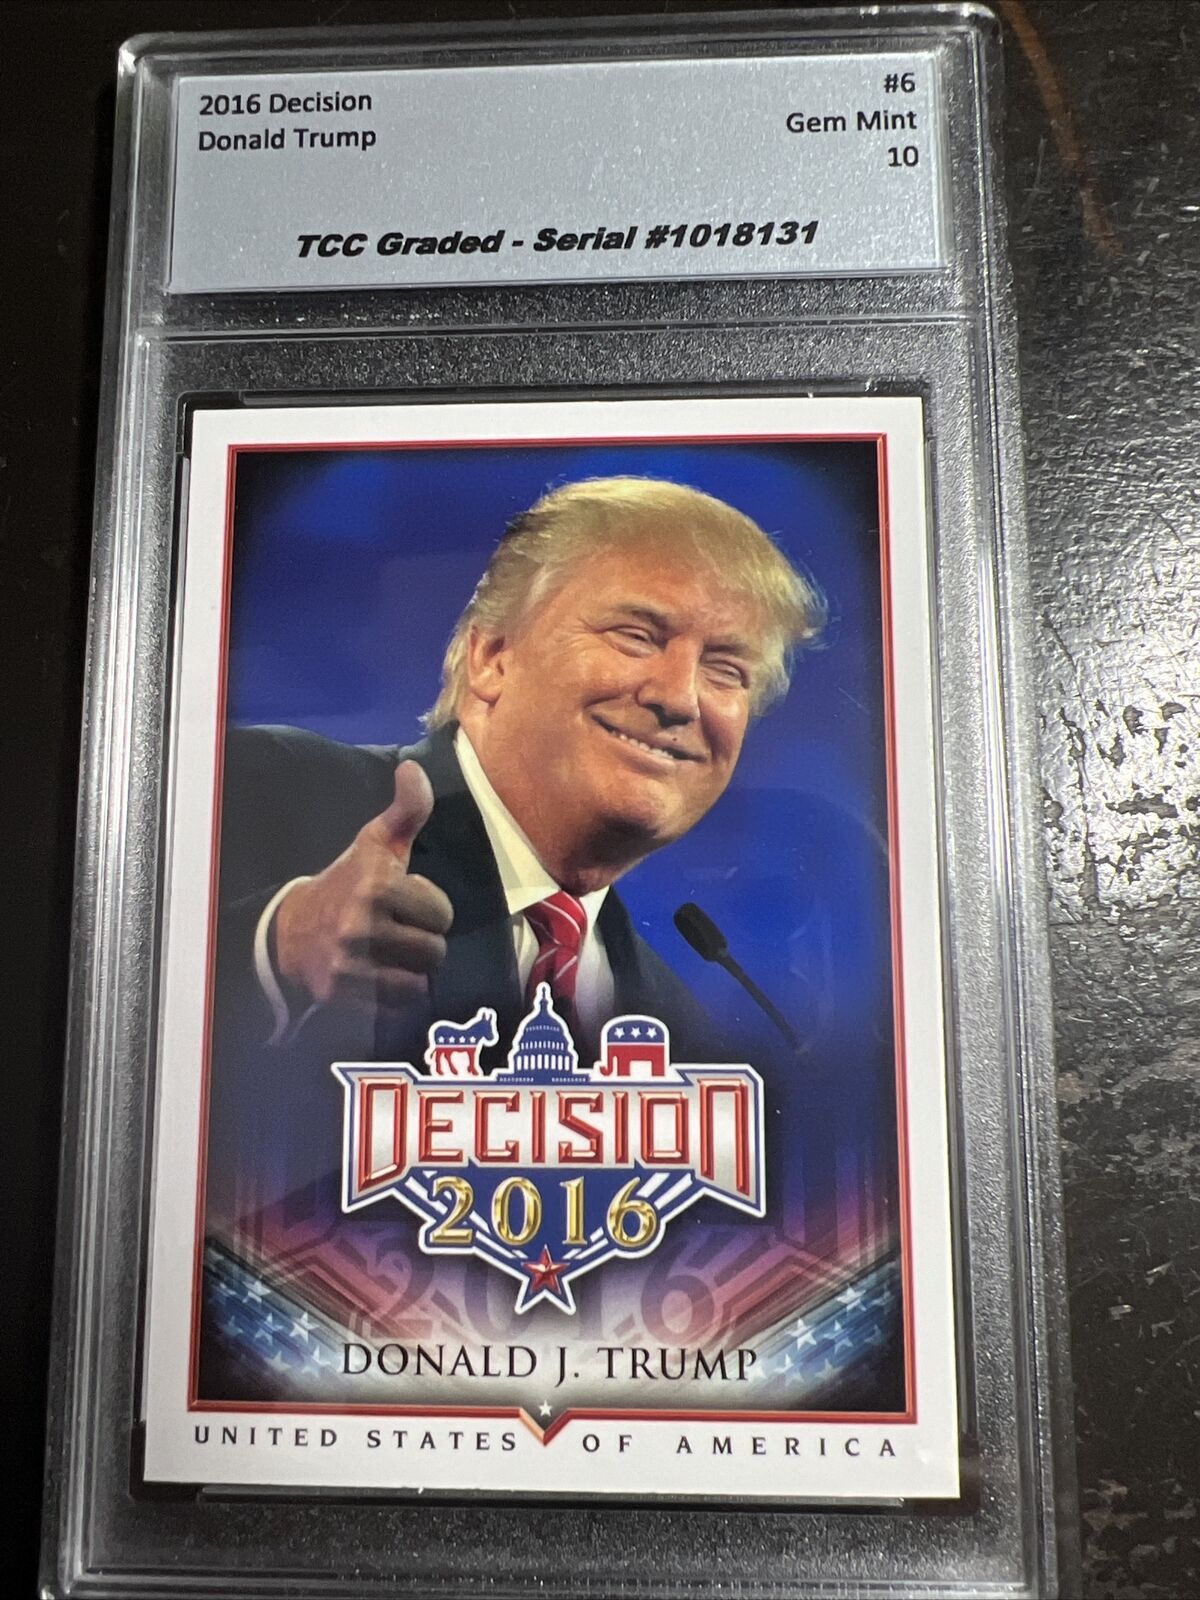 2016 Decision Donald Trump #6 TCC Graded Gem Mint 10